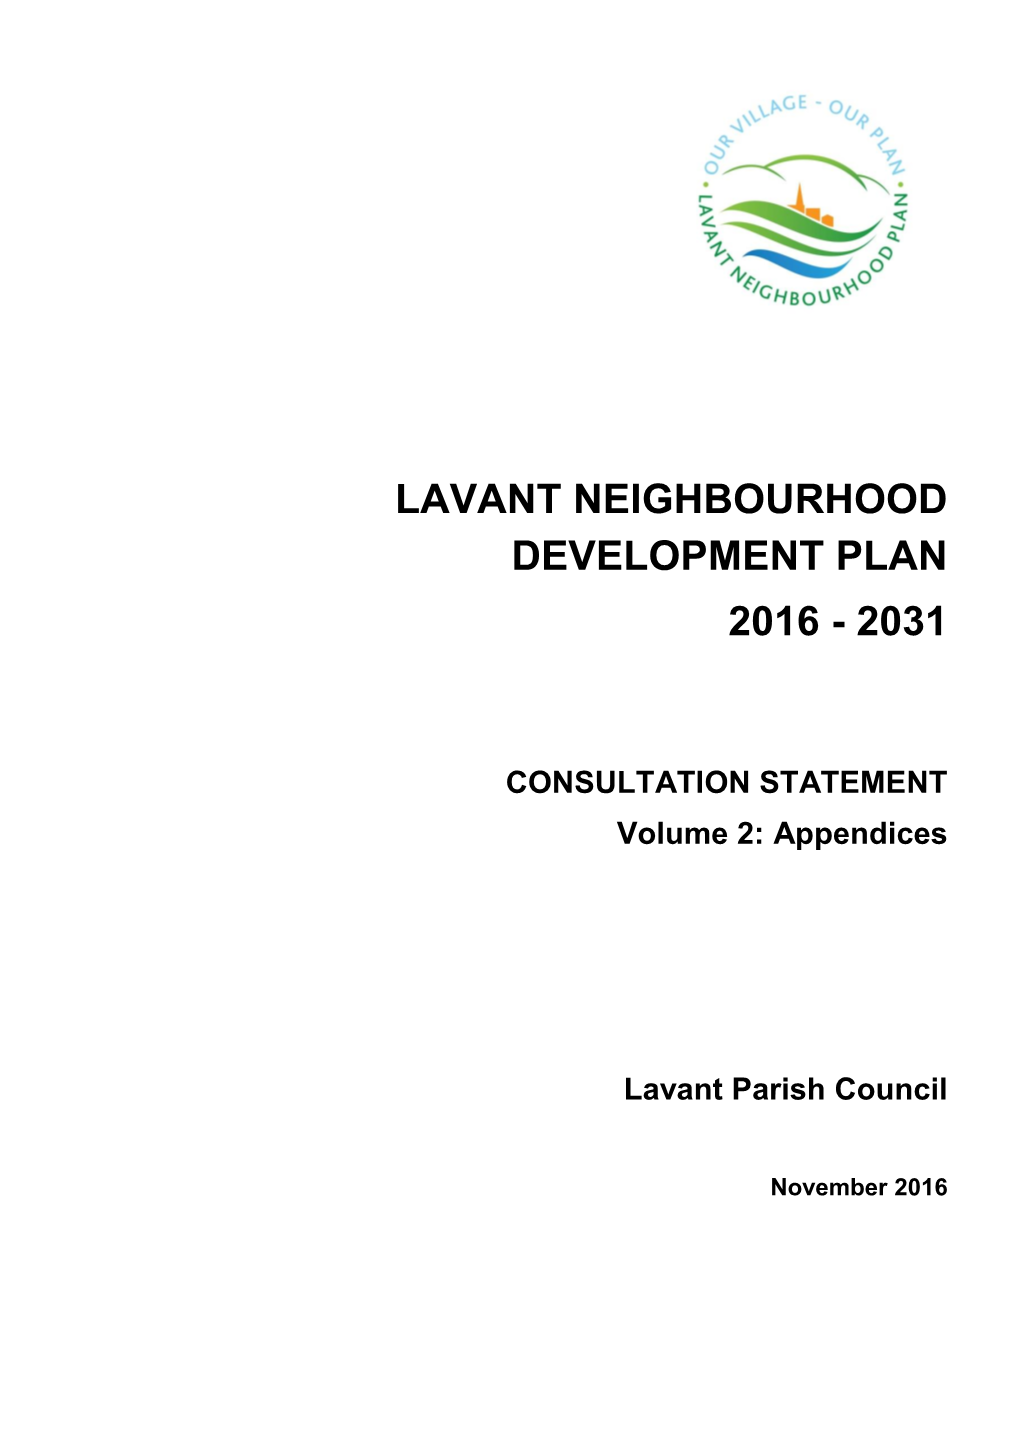 Lavant Neighbourhood Development Plan 2016 - 2031